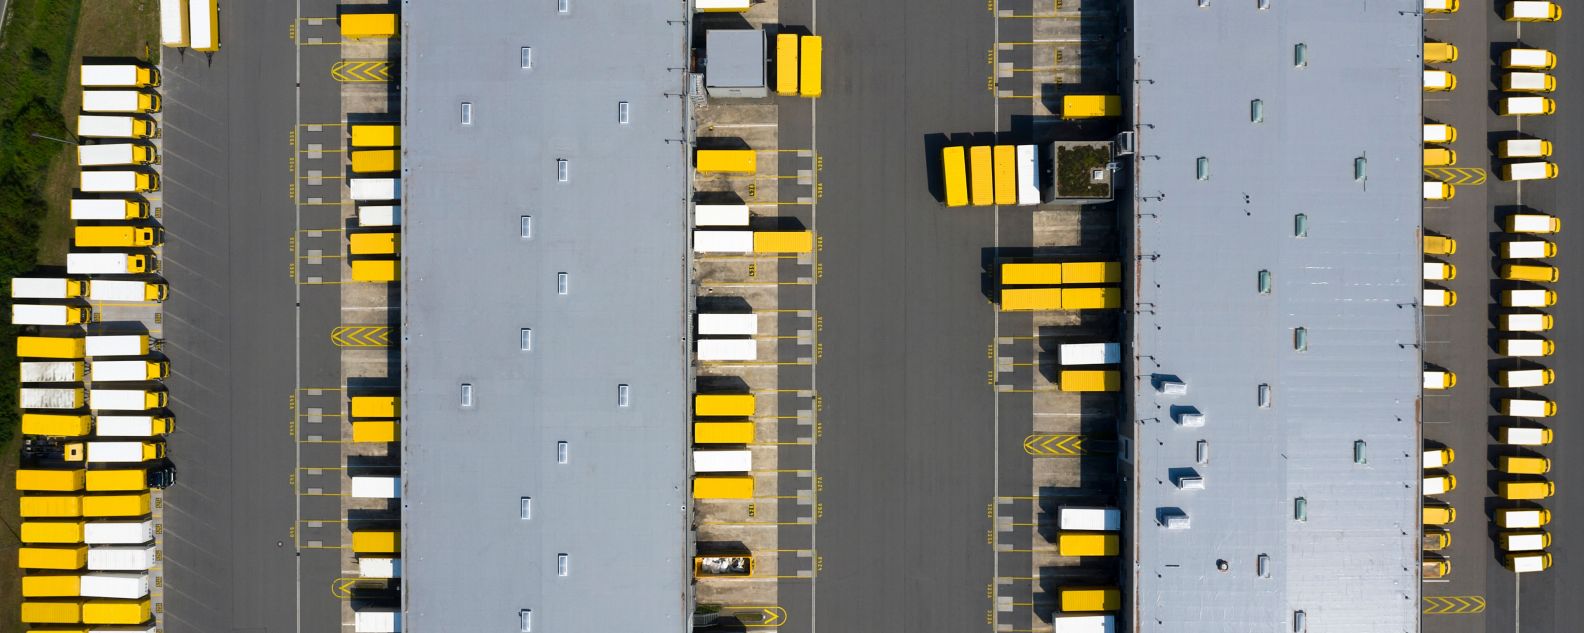 Vista dall'alto dei container e del magazzino di distribuzione